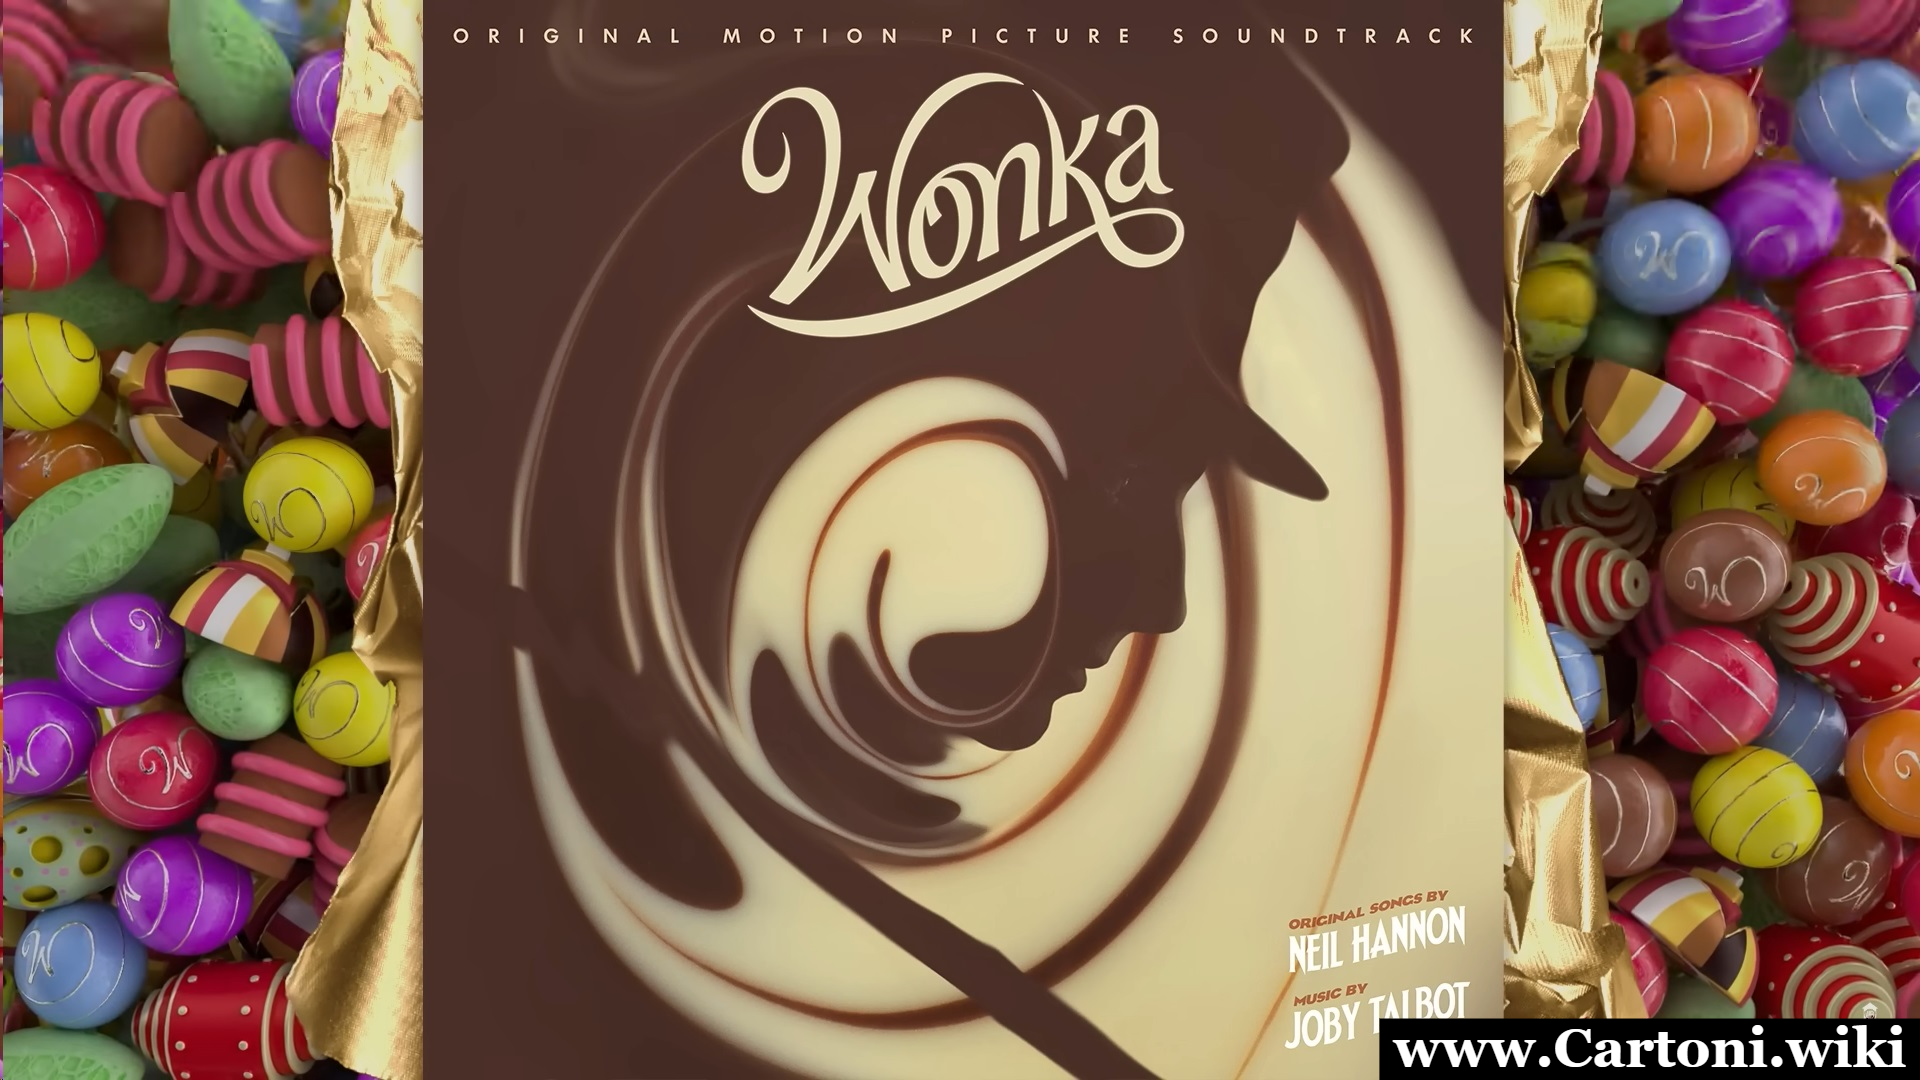 Pure Imagination colonna sonora Wonka Pure Imagination: testo (lyrics), video, traduzione e informazioni sulla colonna sonora del film Willy Wonka del 2023 - Immagini gratis